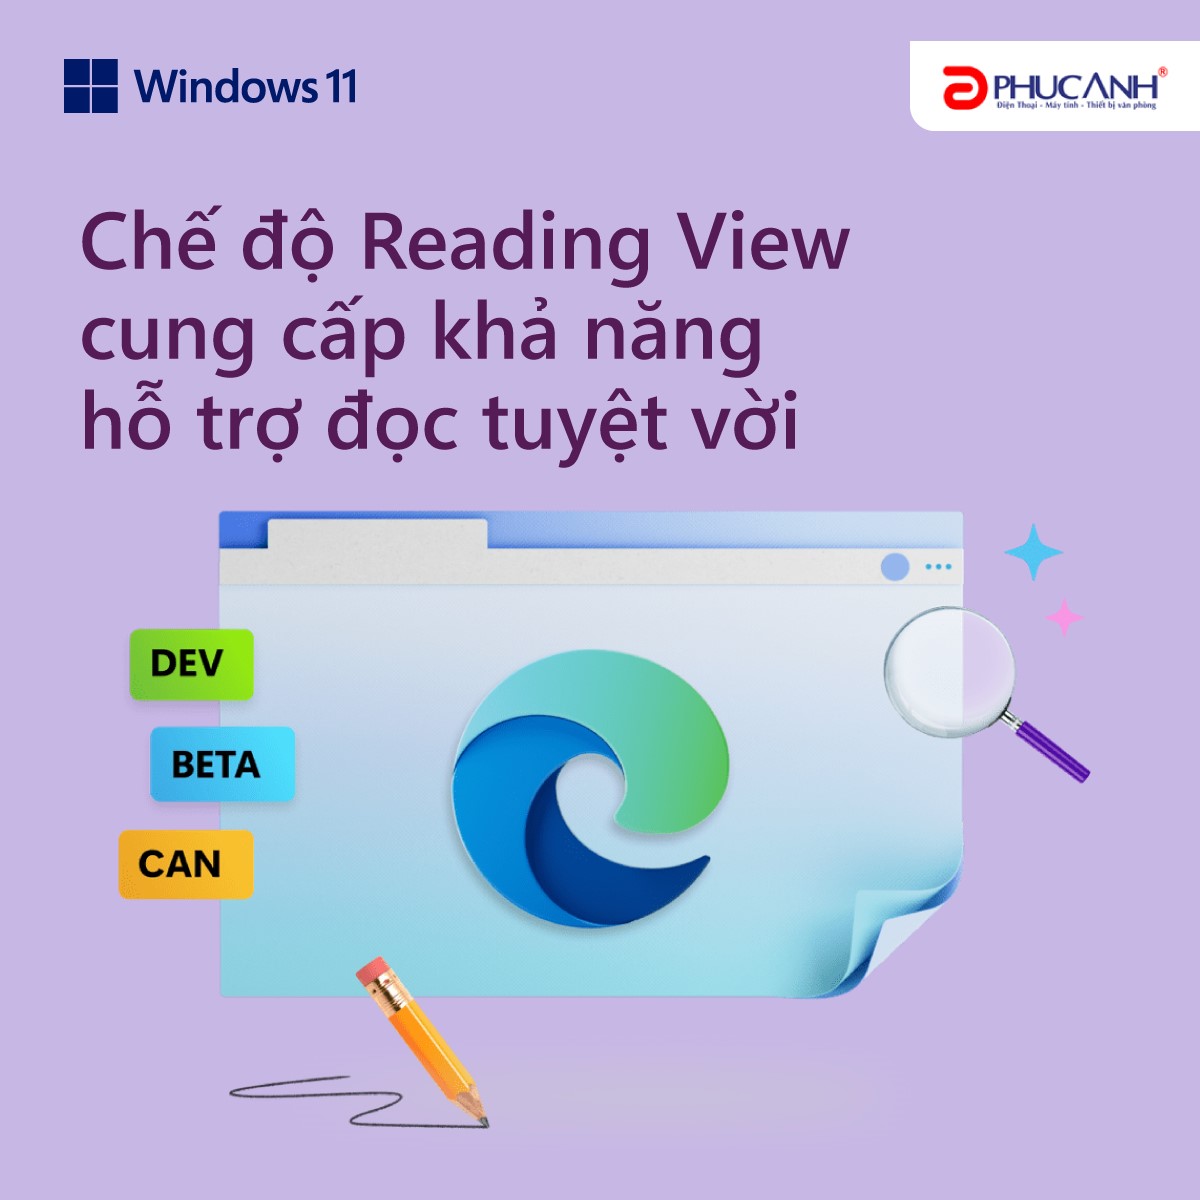 Chế độ Reading View cung cấp khả năng hỗ trợ đọc tuyệt vời